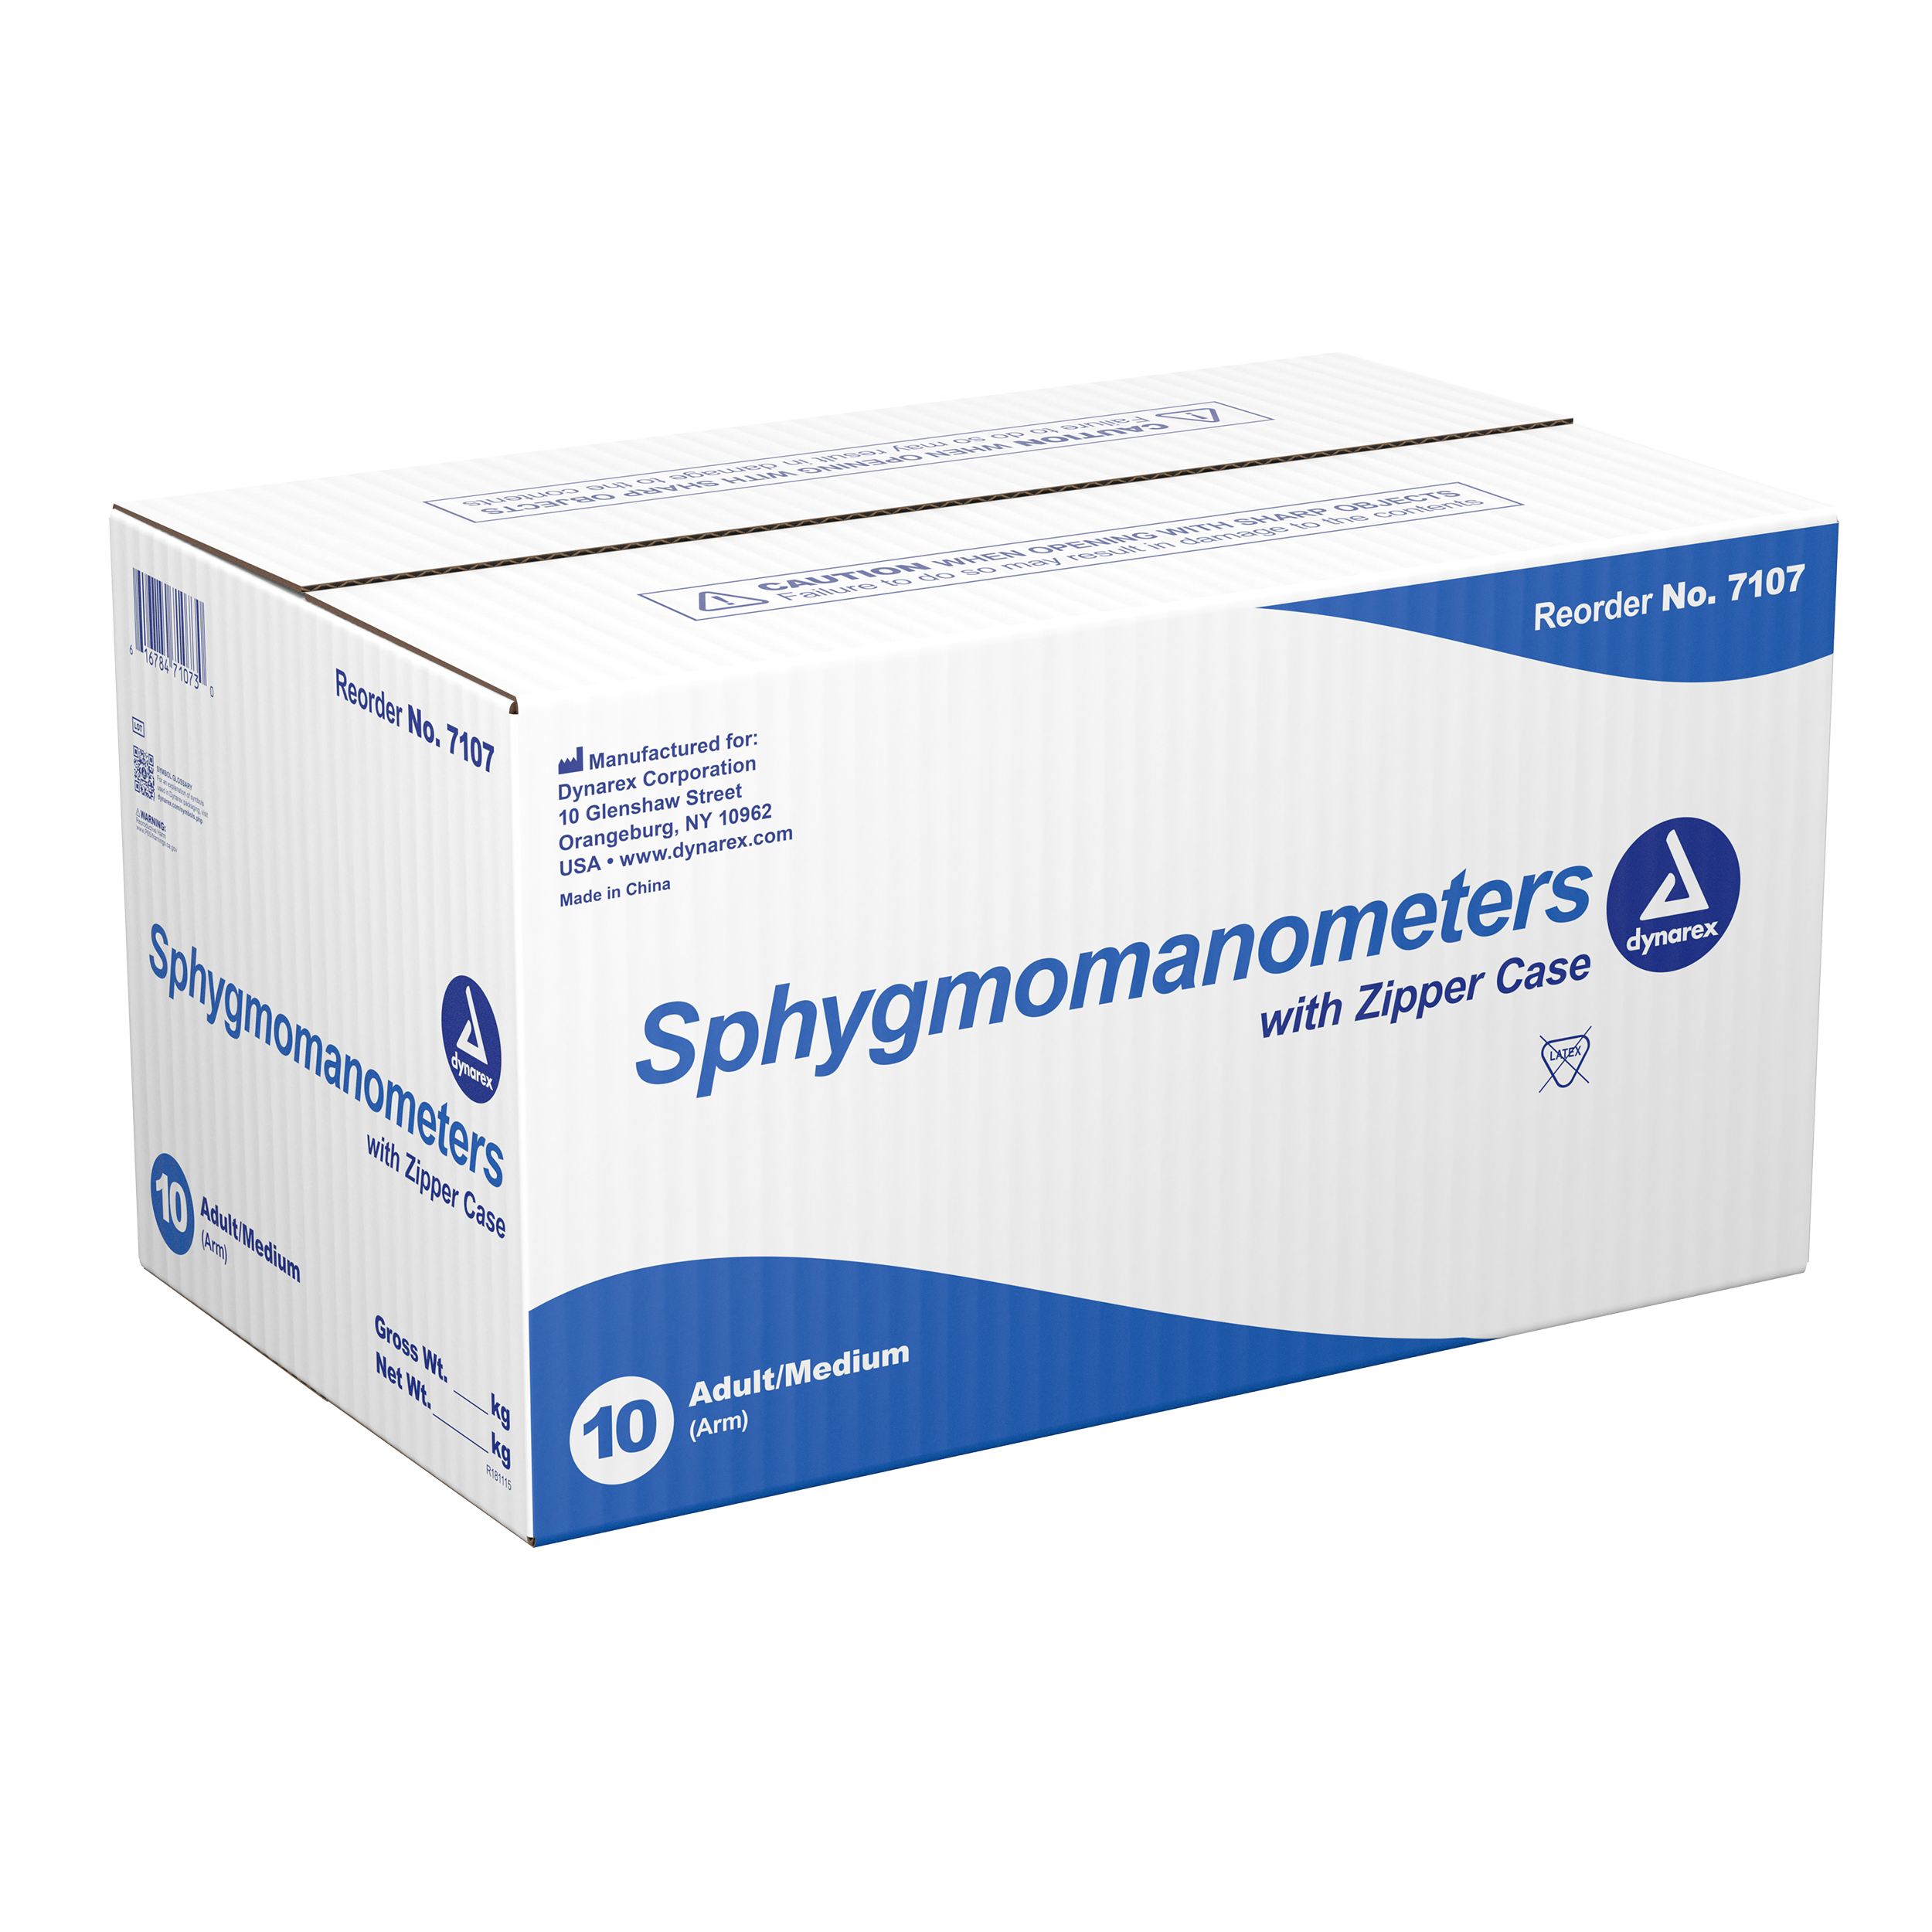 Sphygmomanometer - Adult /Medium (Arm) - 10 Units